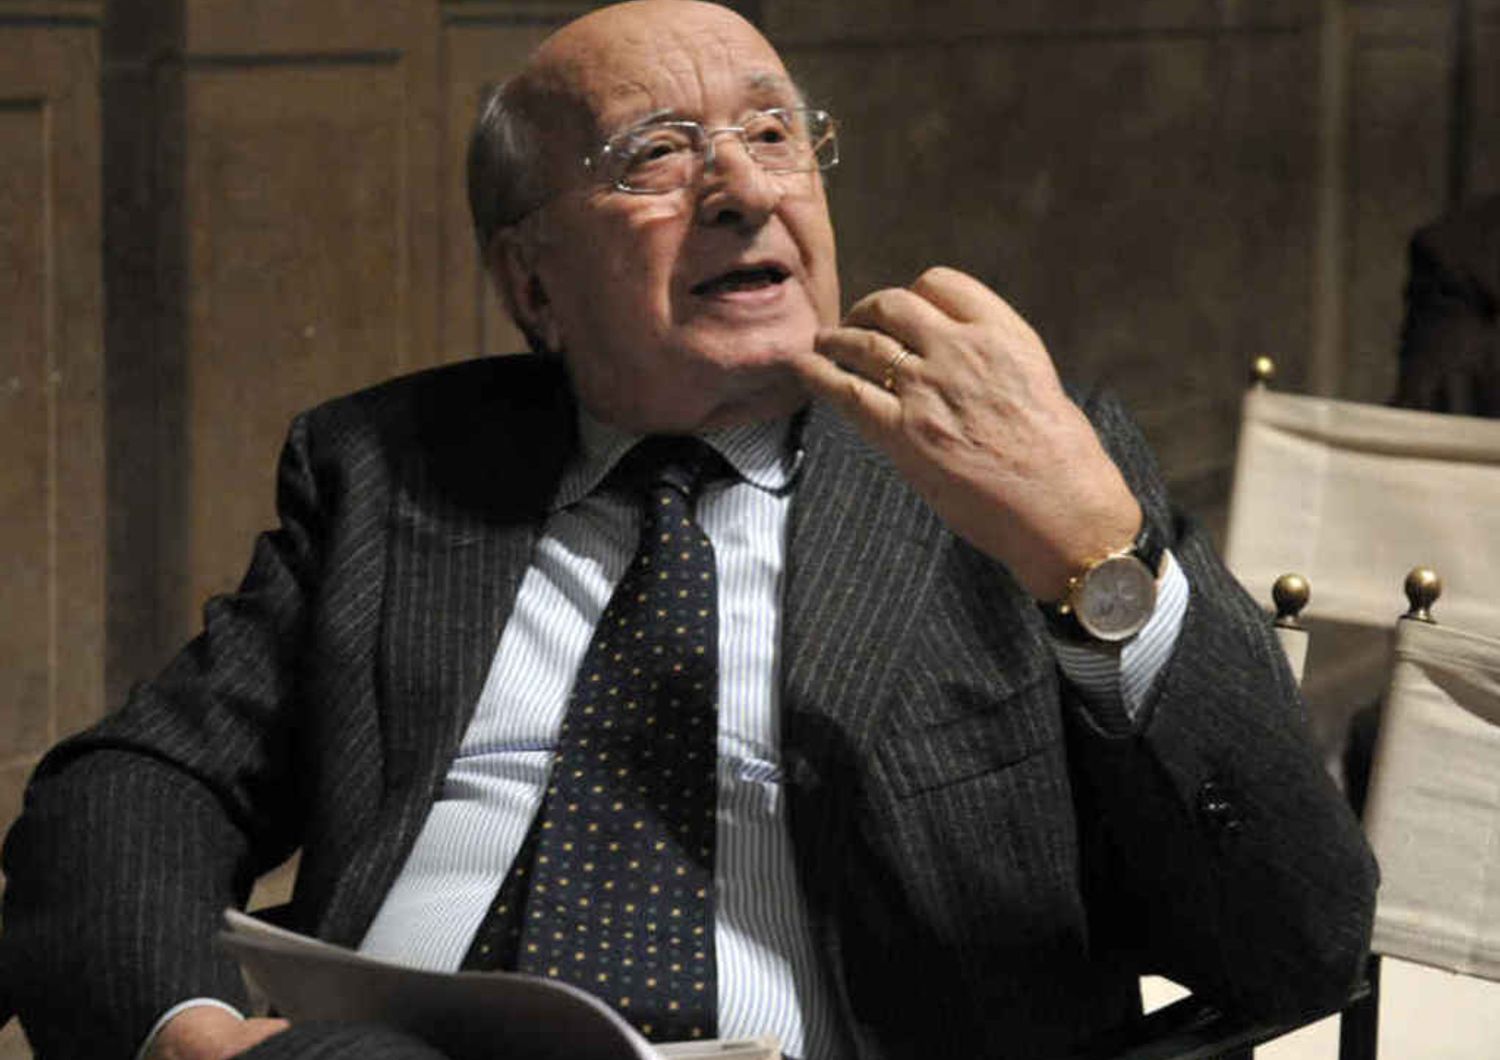 Stato-mafia: De Mita, Falcone mi disse "boss eleveranno scontro"